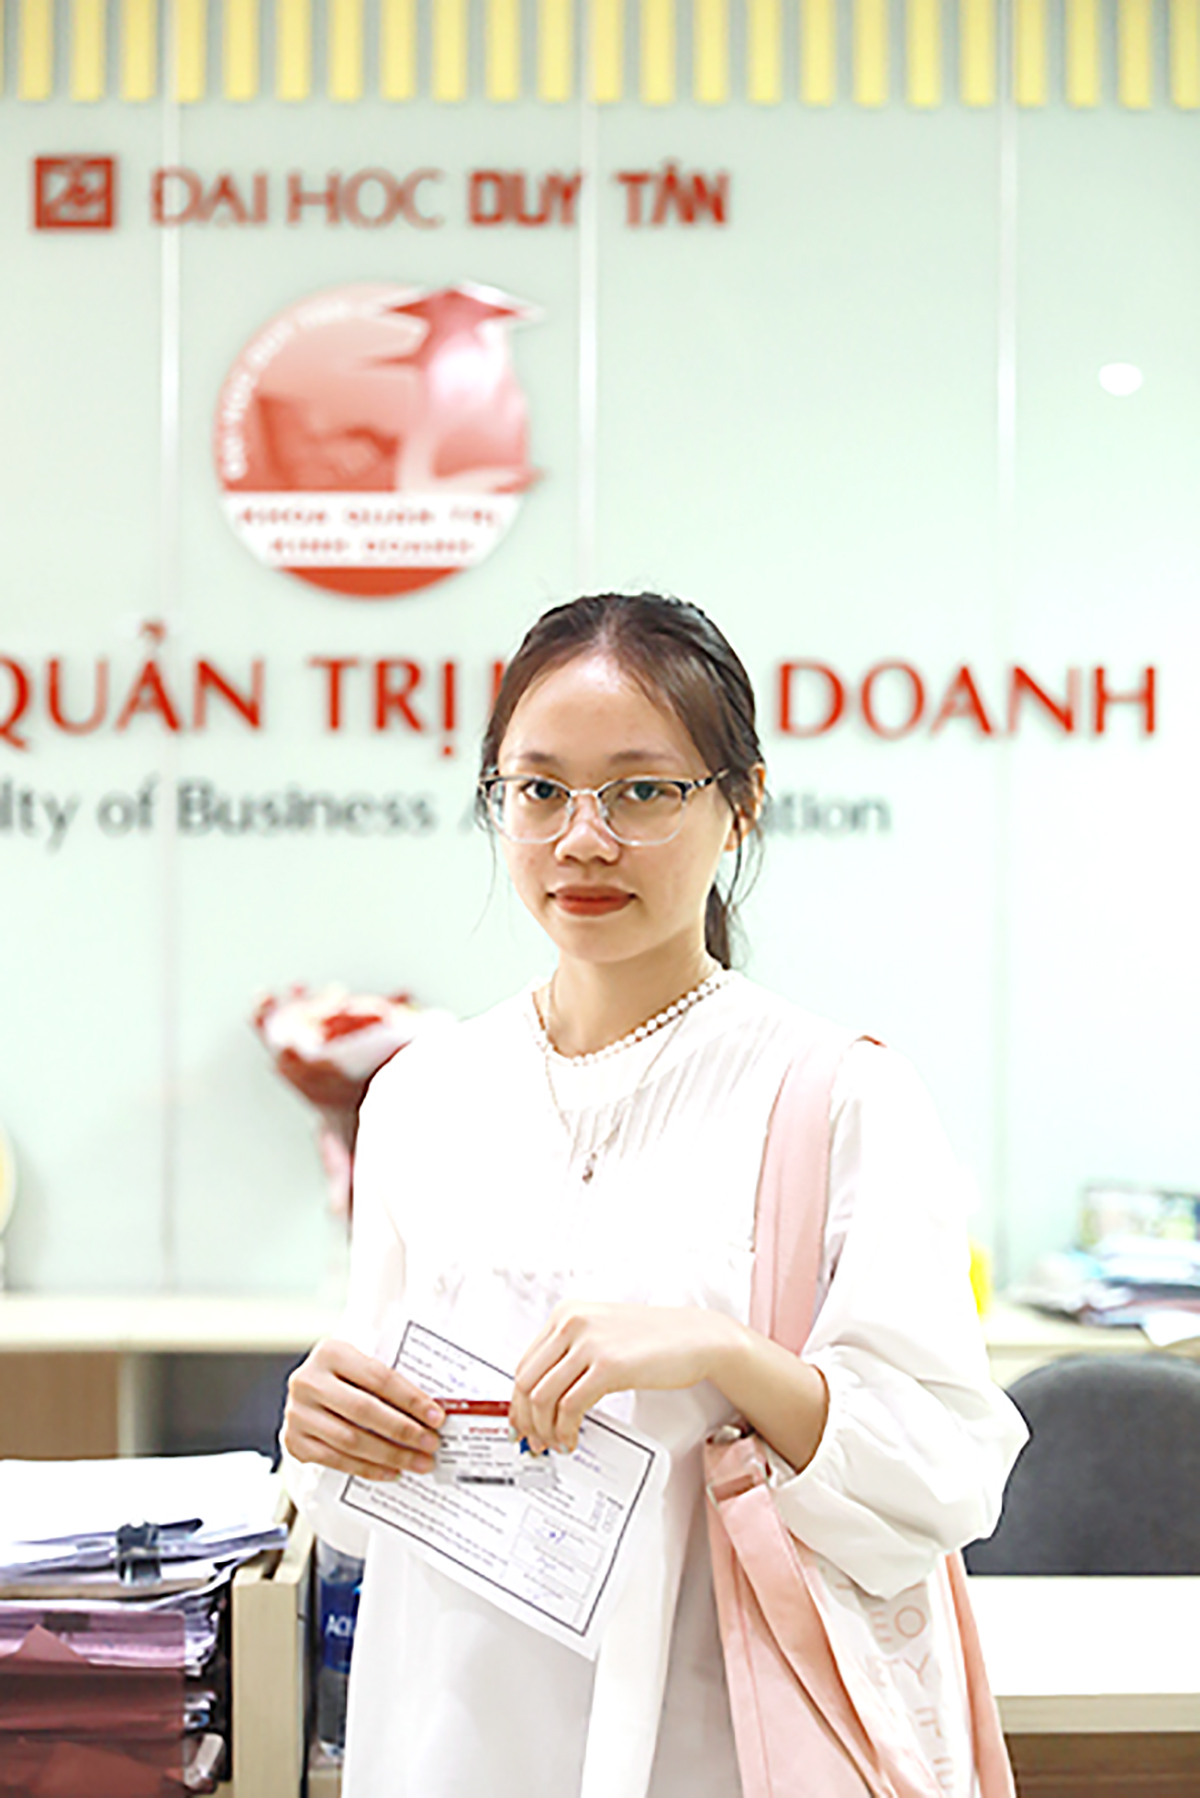 Nữ sinh Nguyễn Thị Khánh Chi (28/30 điểm) đến nhập học tại ĐH Duy Tân